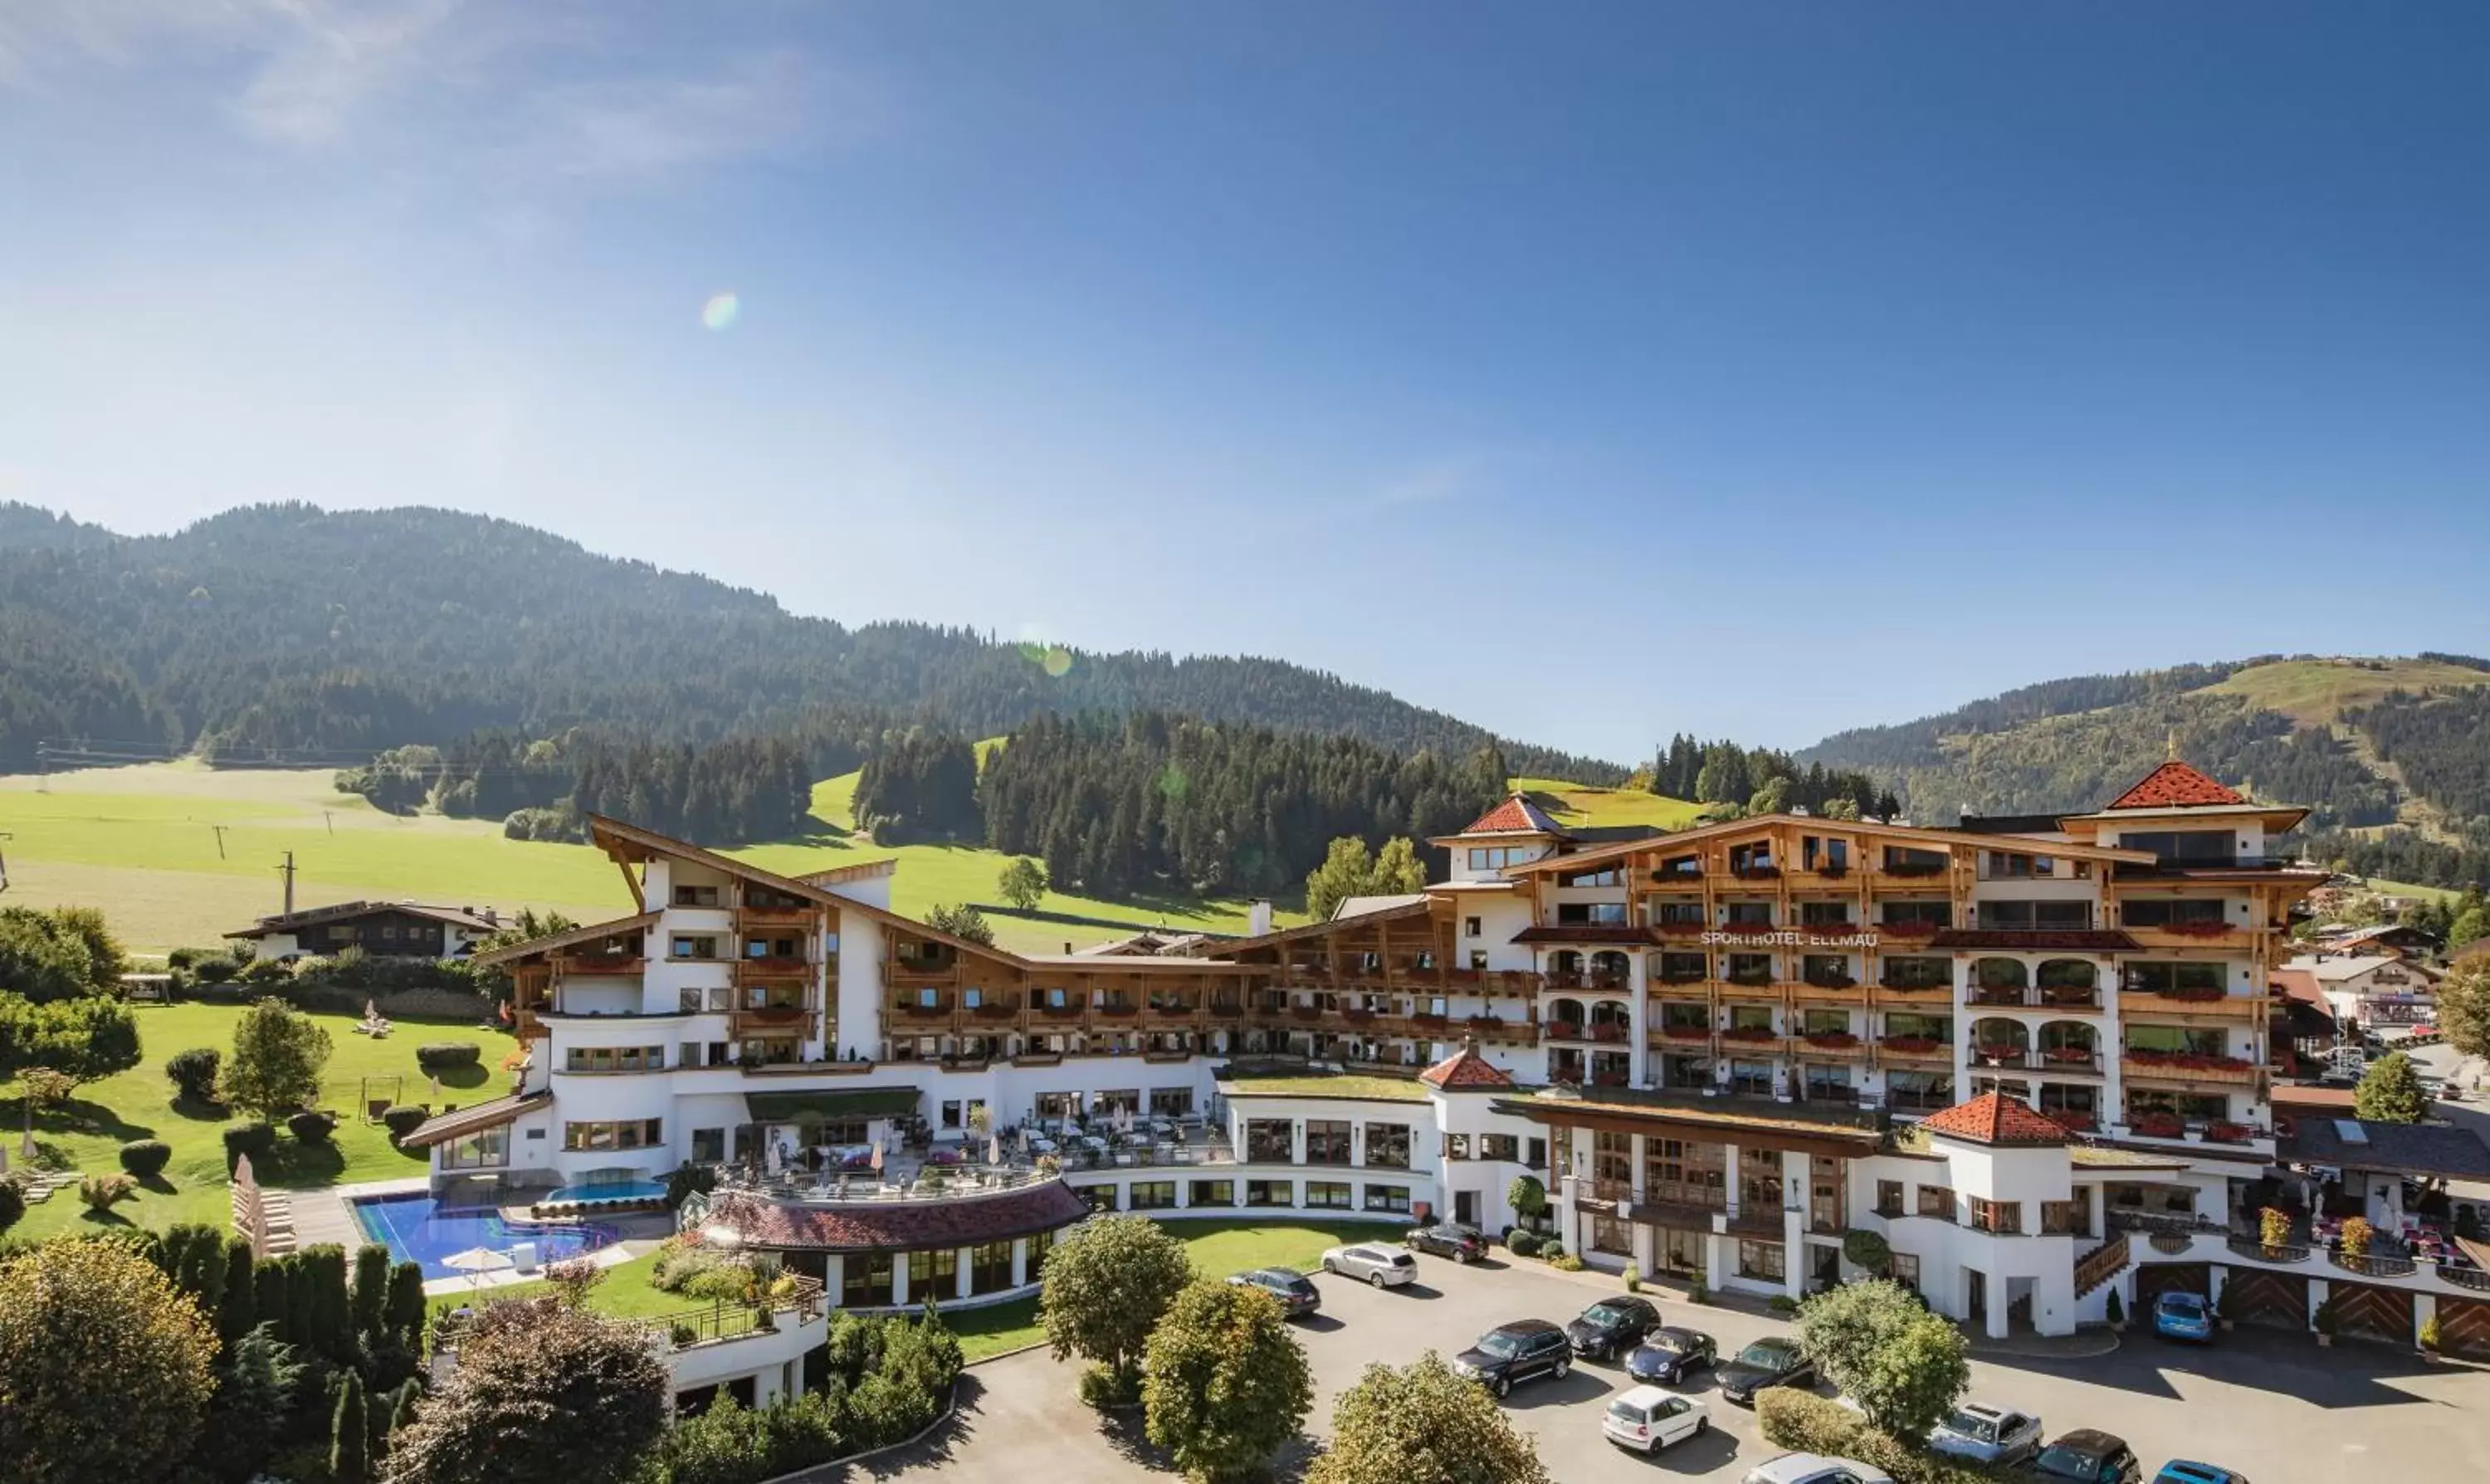 Property building in Sporthotel Ellmau in Tirol